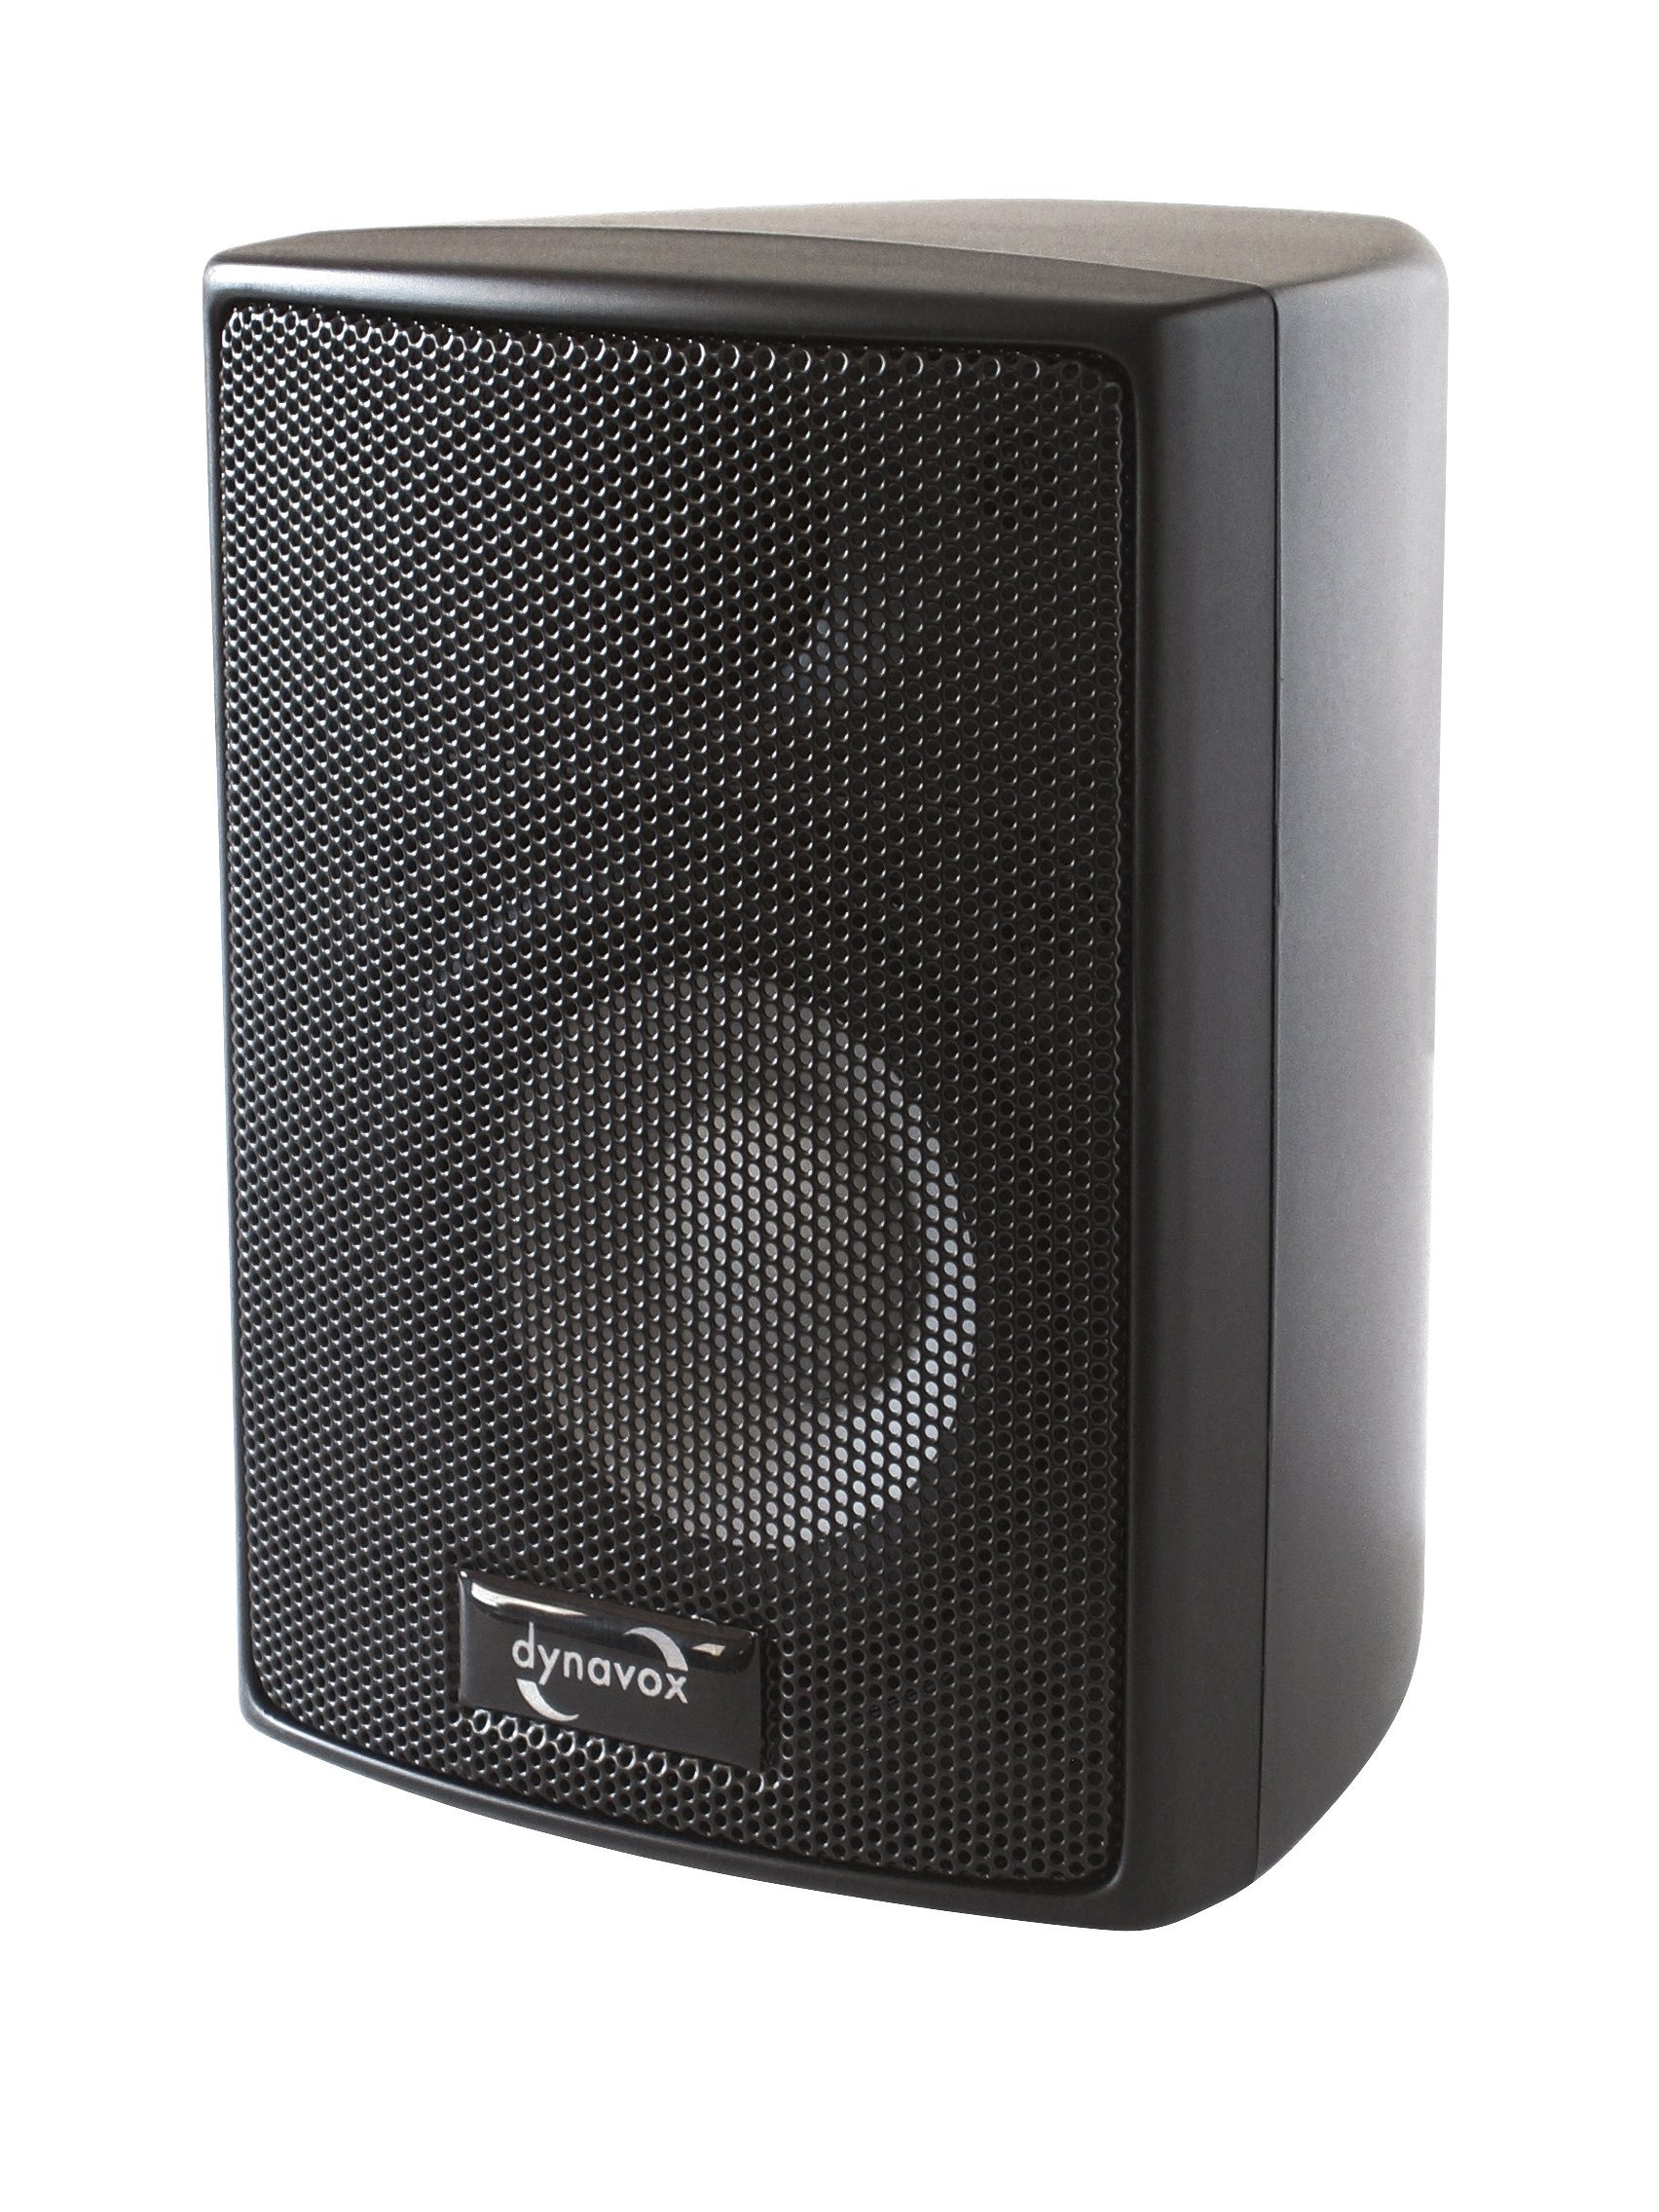 Dynavox AS 301 Lautsprecher (60 W, Paar, für Heimkino oder Büro, kompakte Surround-Box, Wandmontage) Schwarz